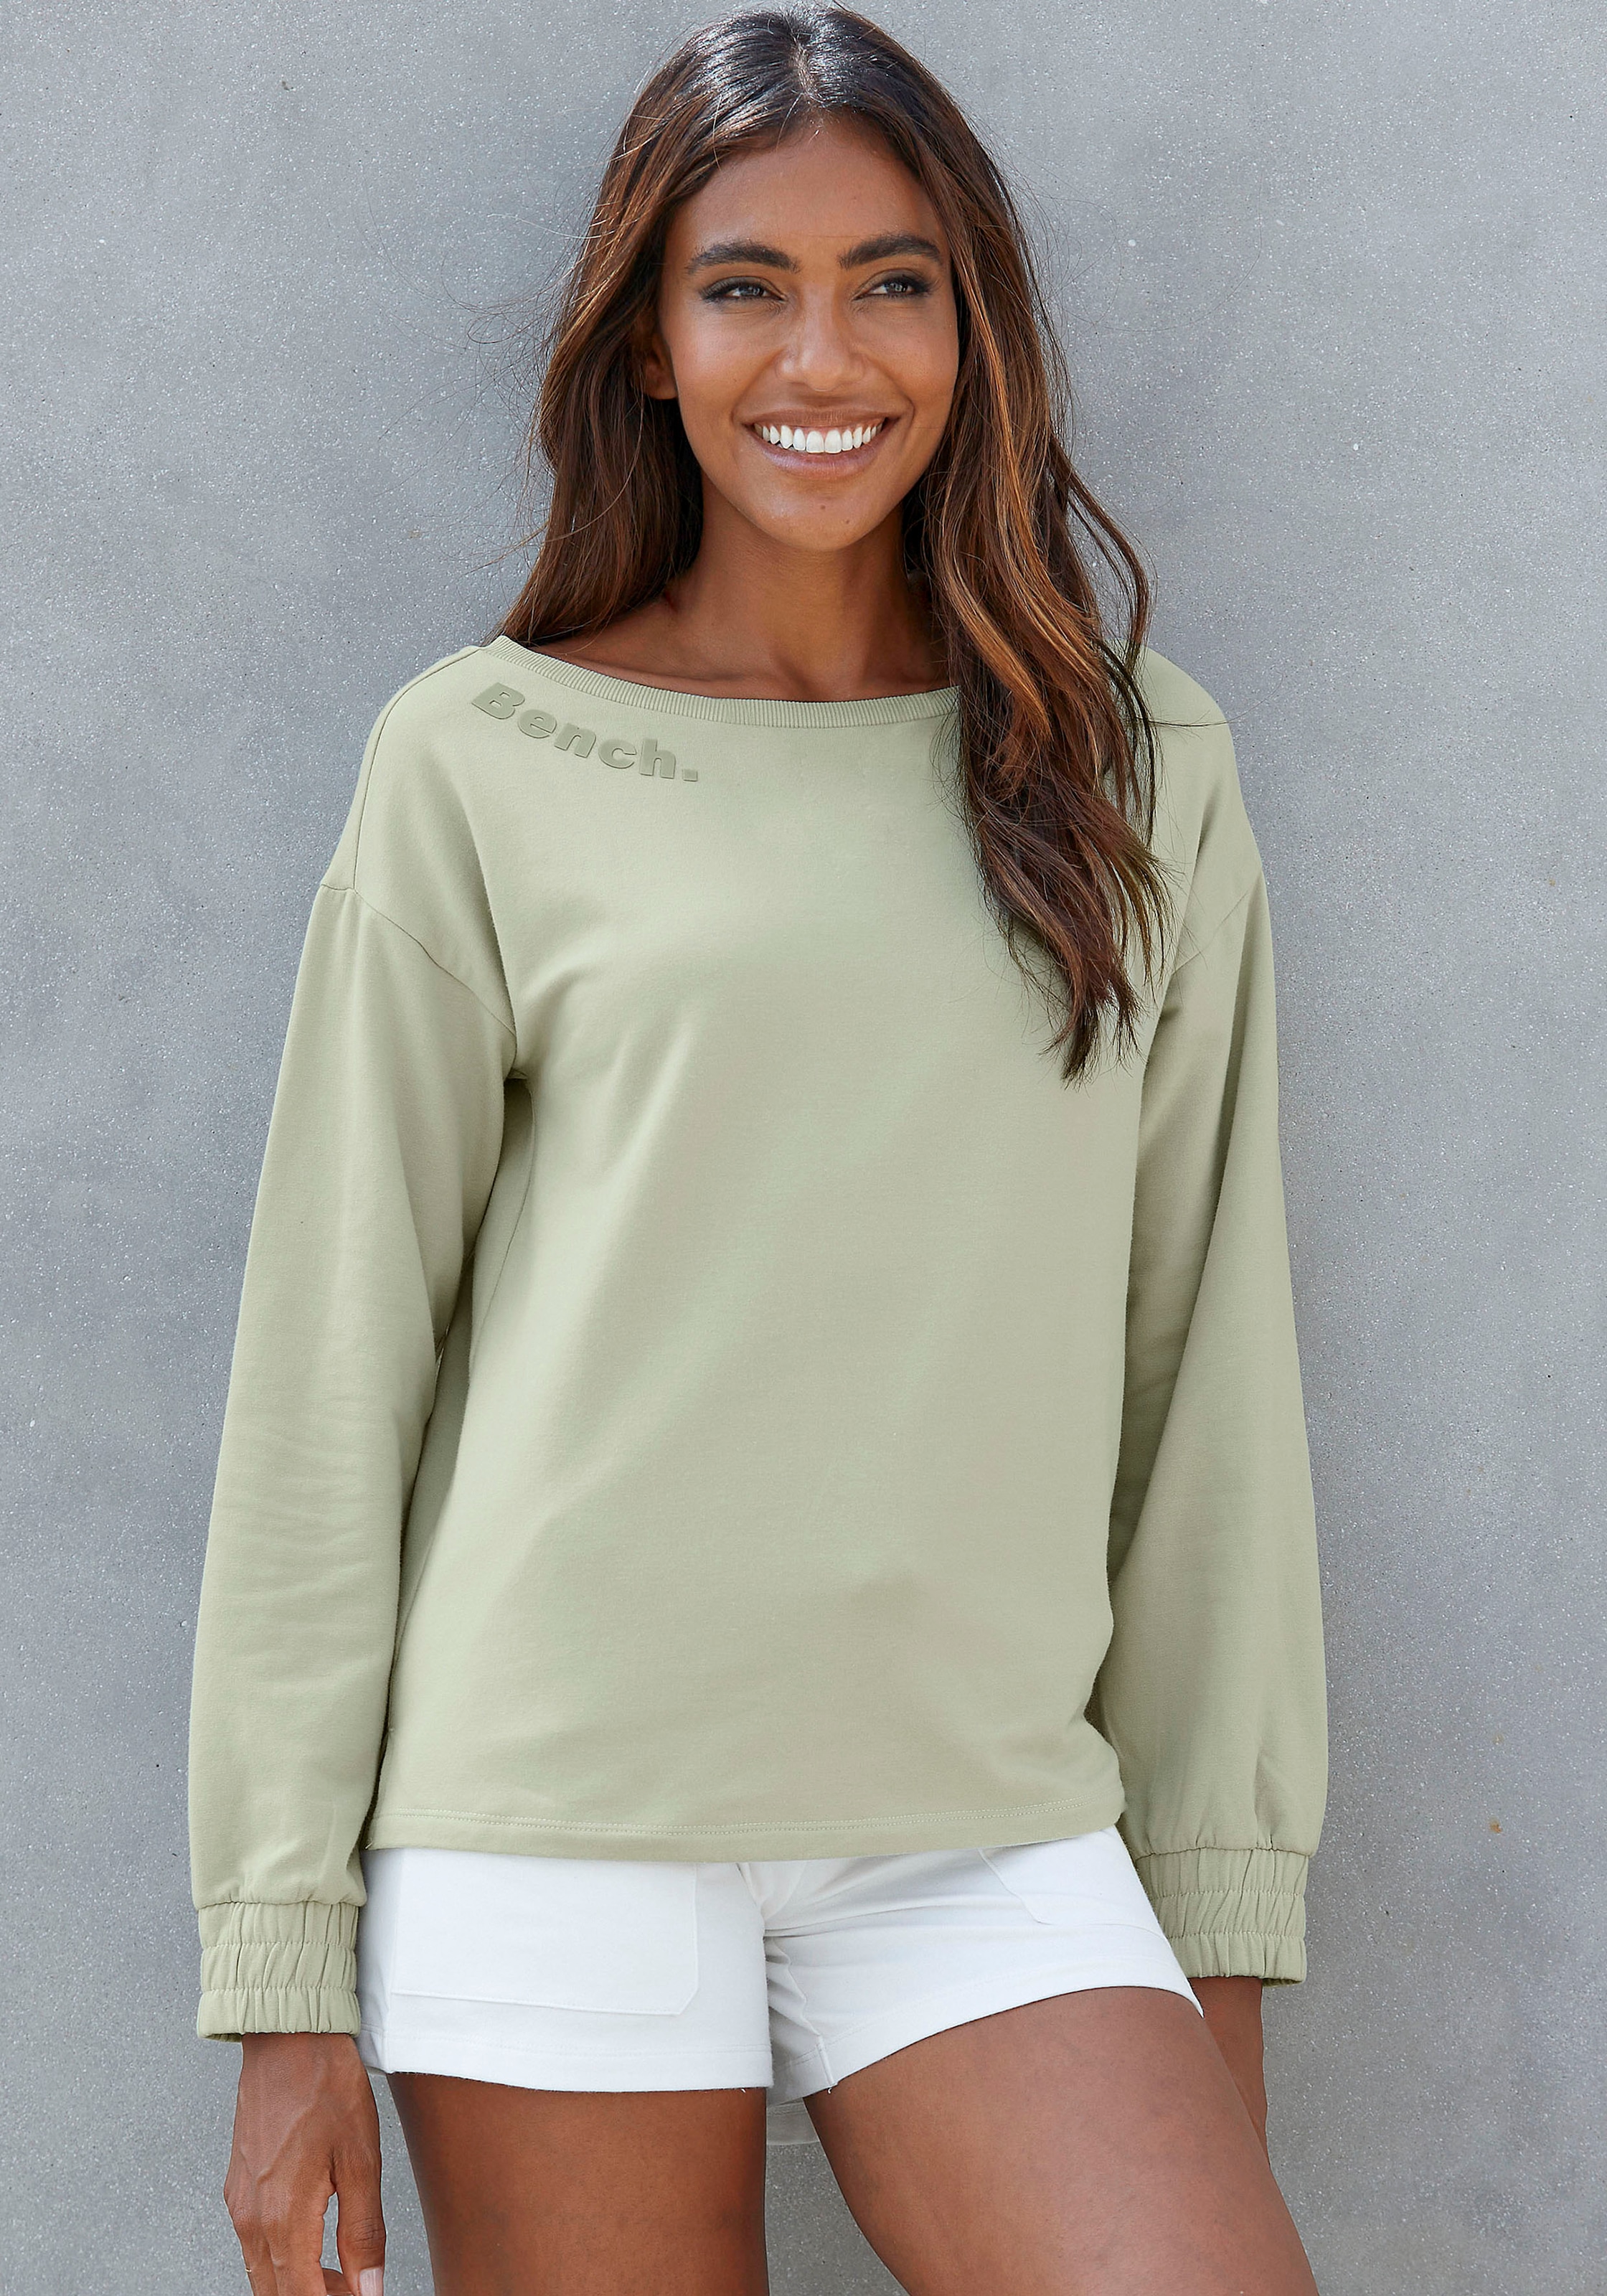 Bench. Loungewear Sweatshirt, mit kaufen online gerafften Jelmoli-Versand bei Loungeanzug Ärmelbündchen, Schweiz